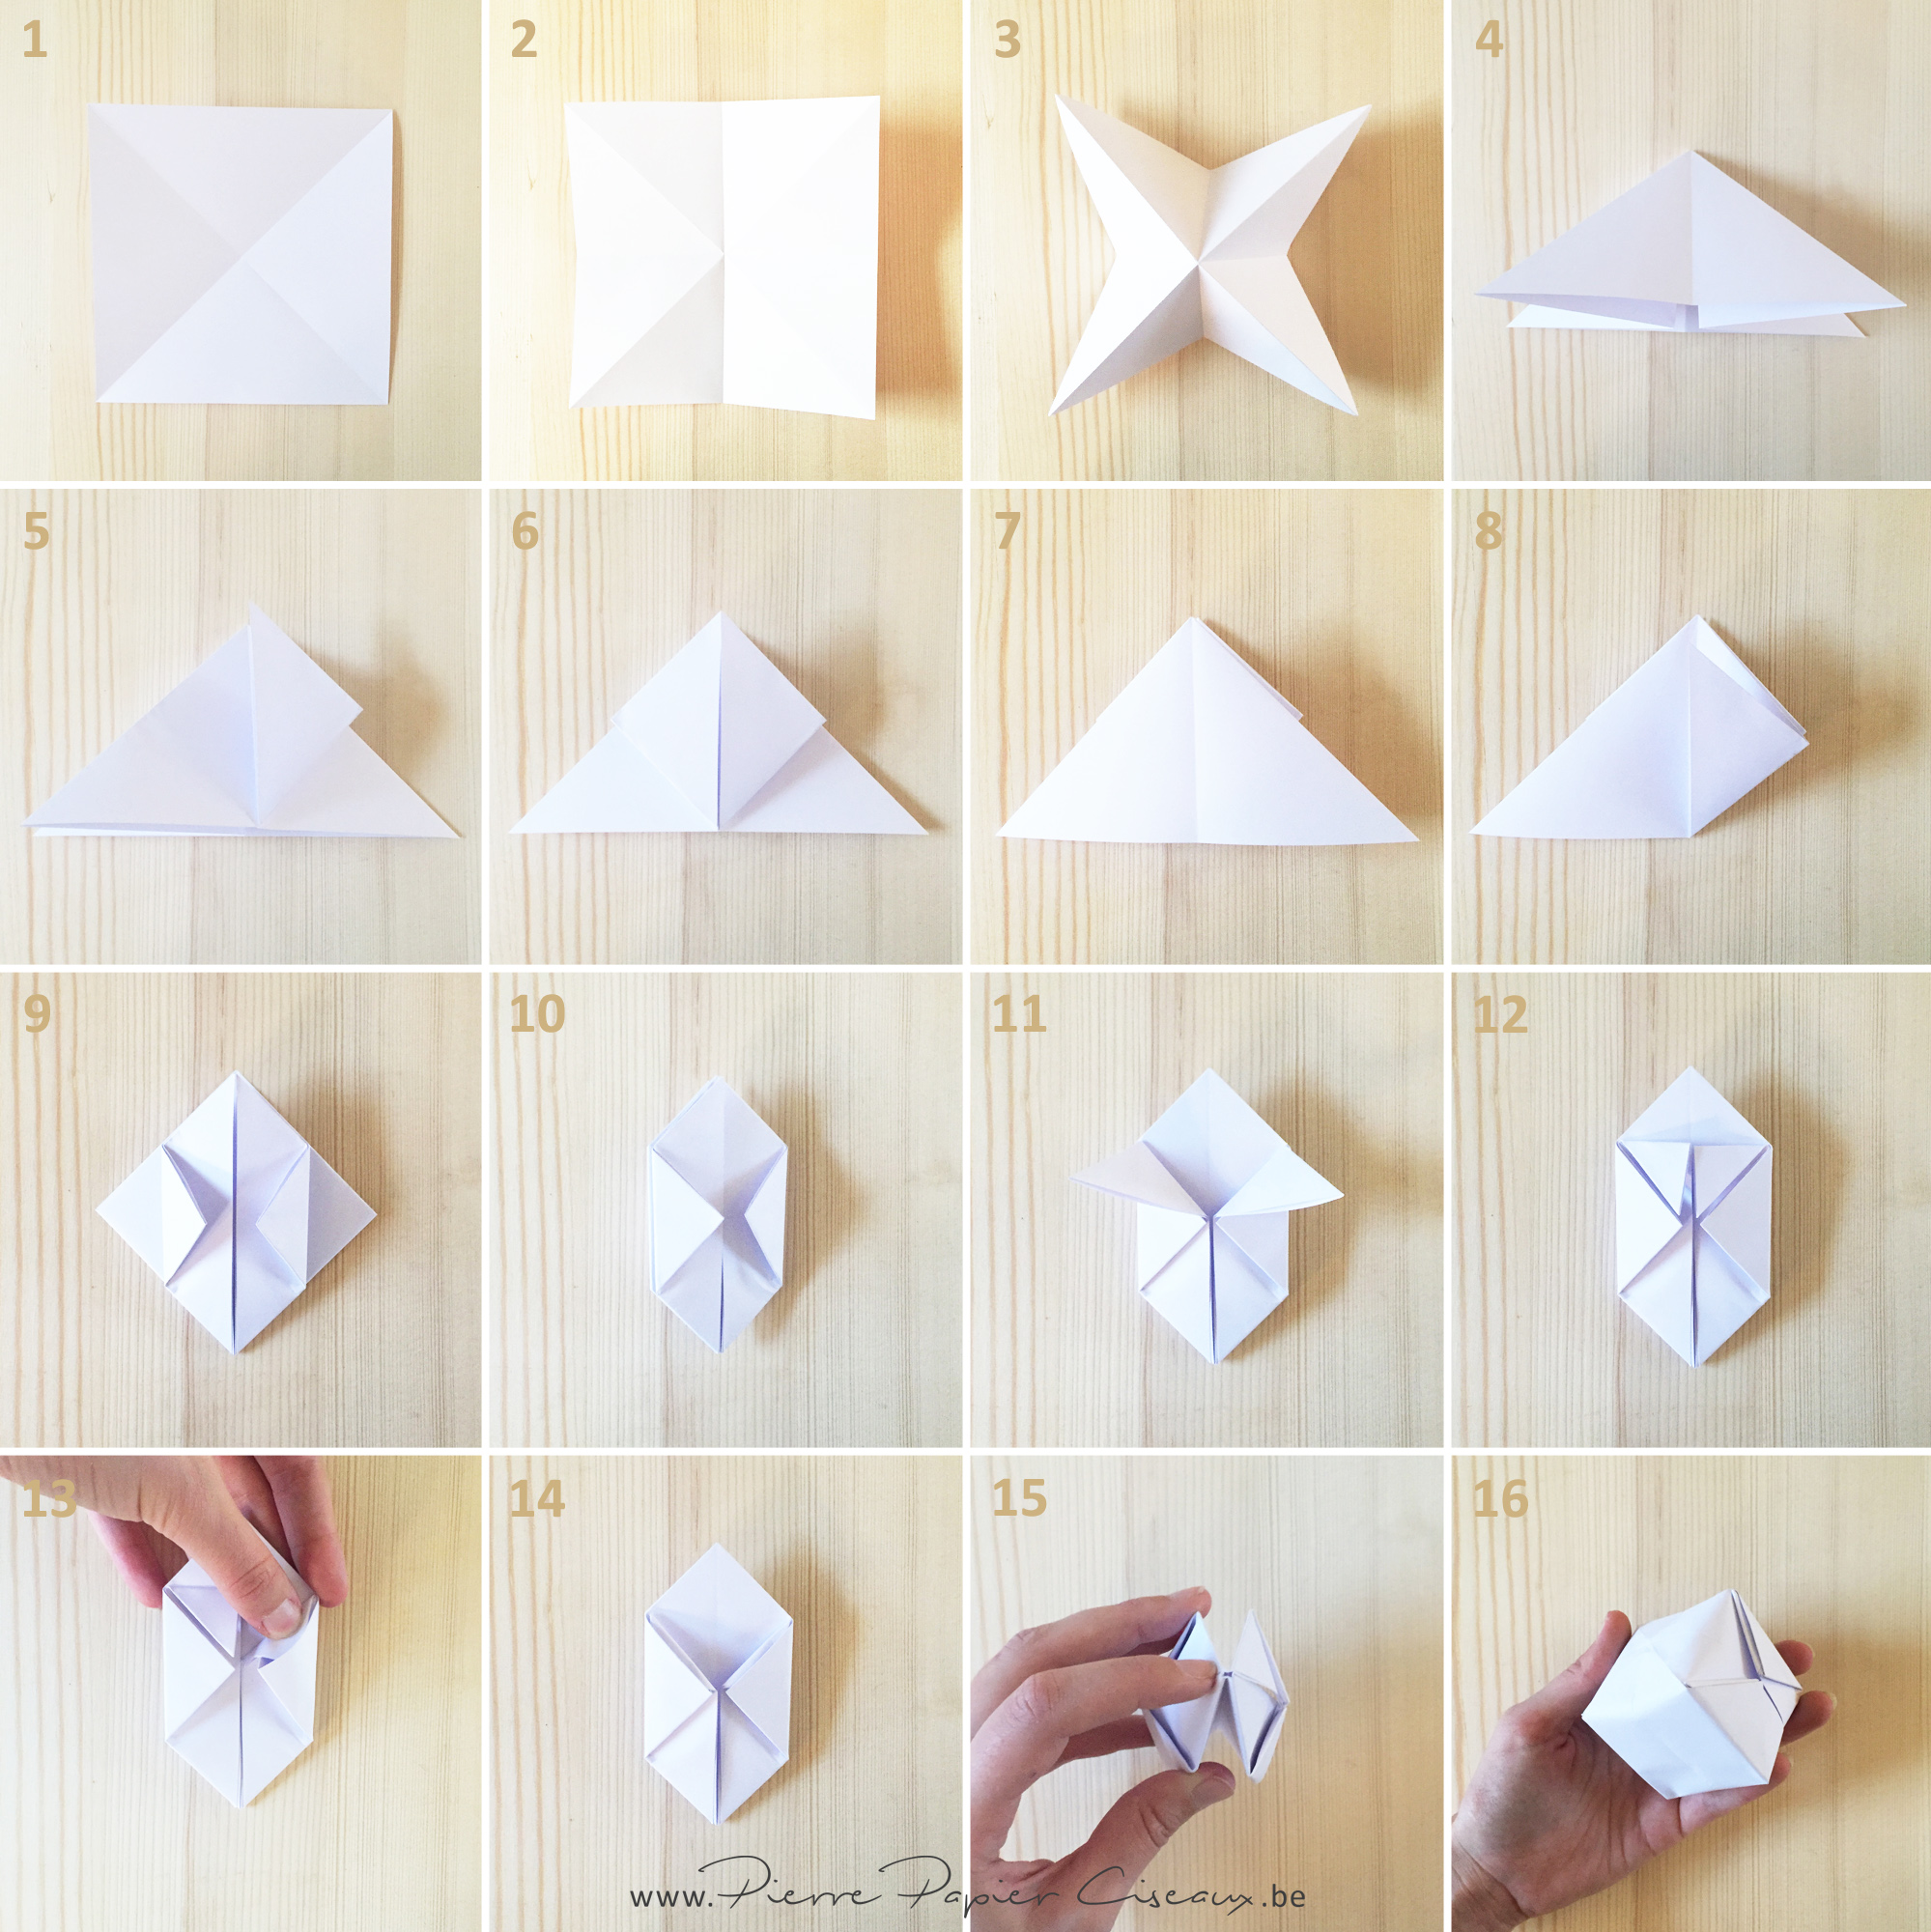 étapes de pliage pour réaliser une boule origami